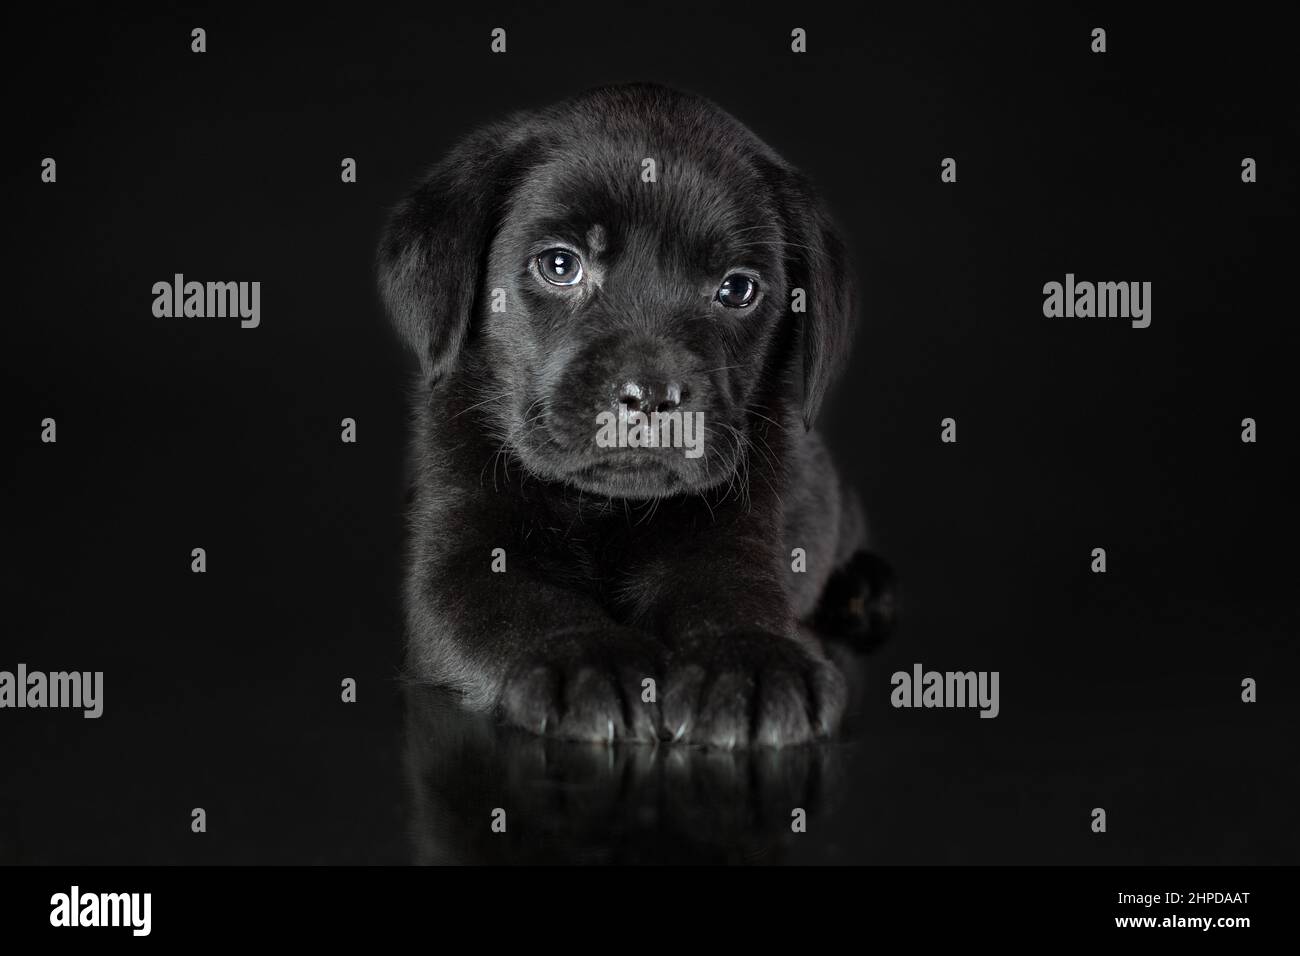 Portrait d'un chien calme et mignon de race labrador Retriever allongé sur un fond noir. Pup triste de couleur noire Banque D'Images